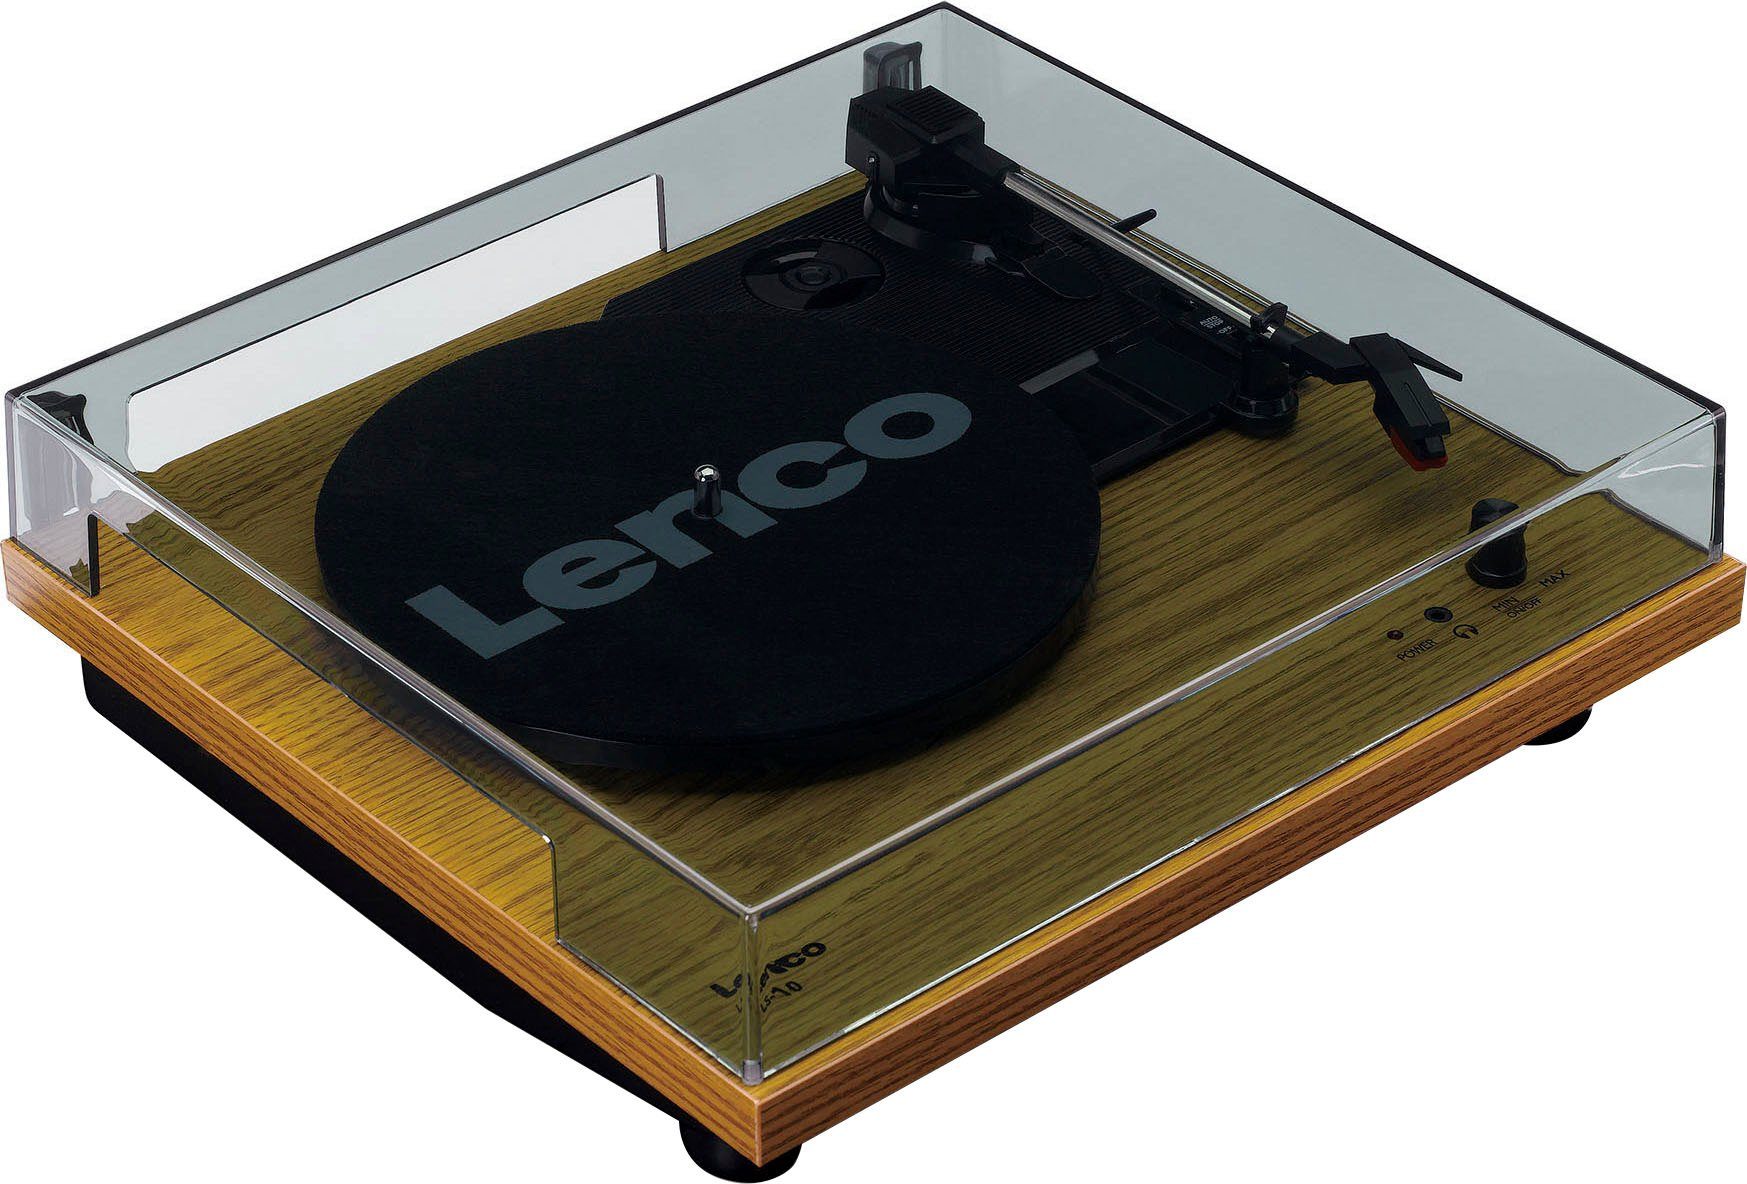 Lenco LS-10WD Plattenspieler mit Lautsprechern (Riemenantrieb) (Weiß/Holz) Plattenspieler